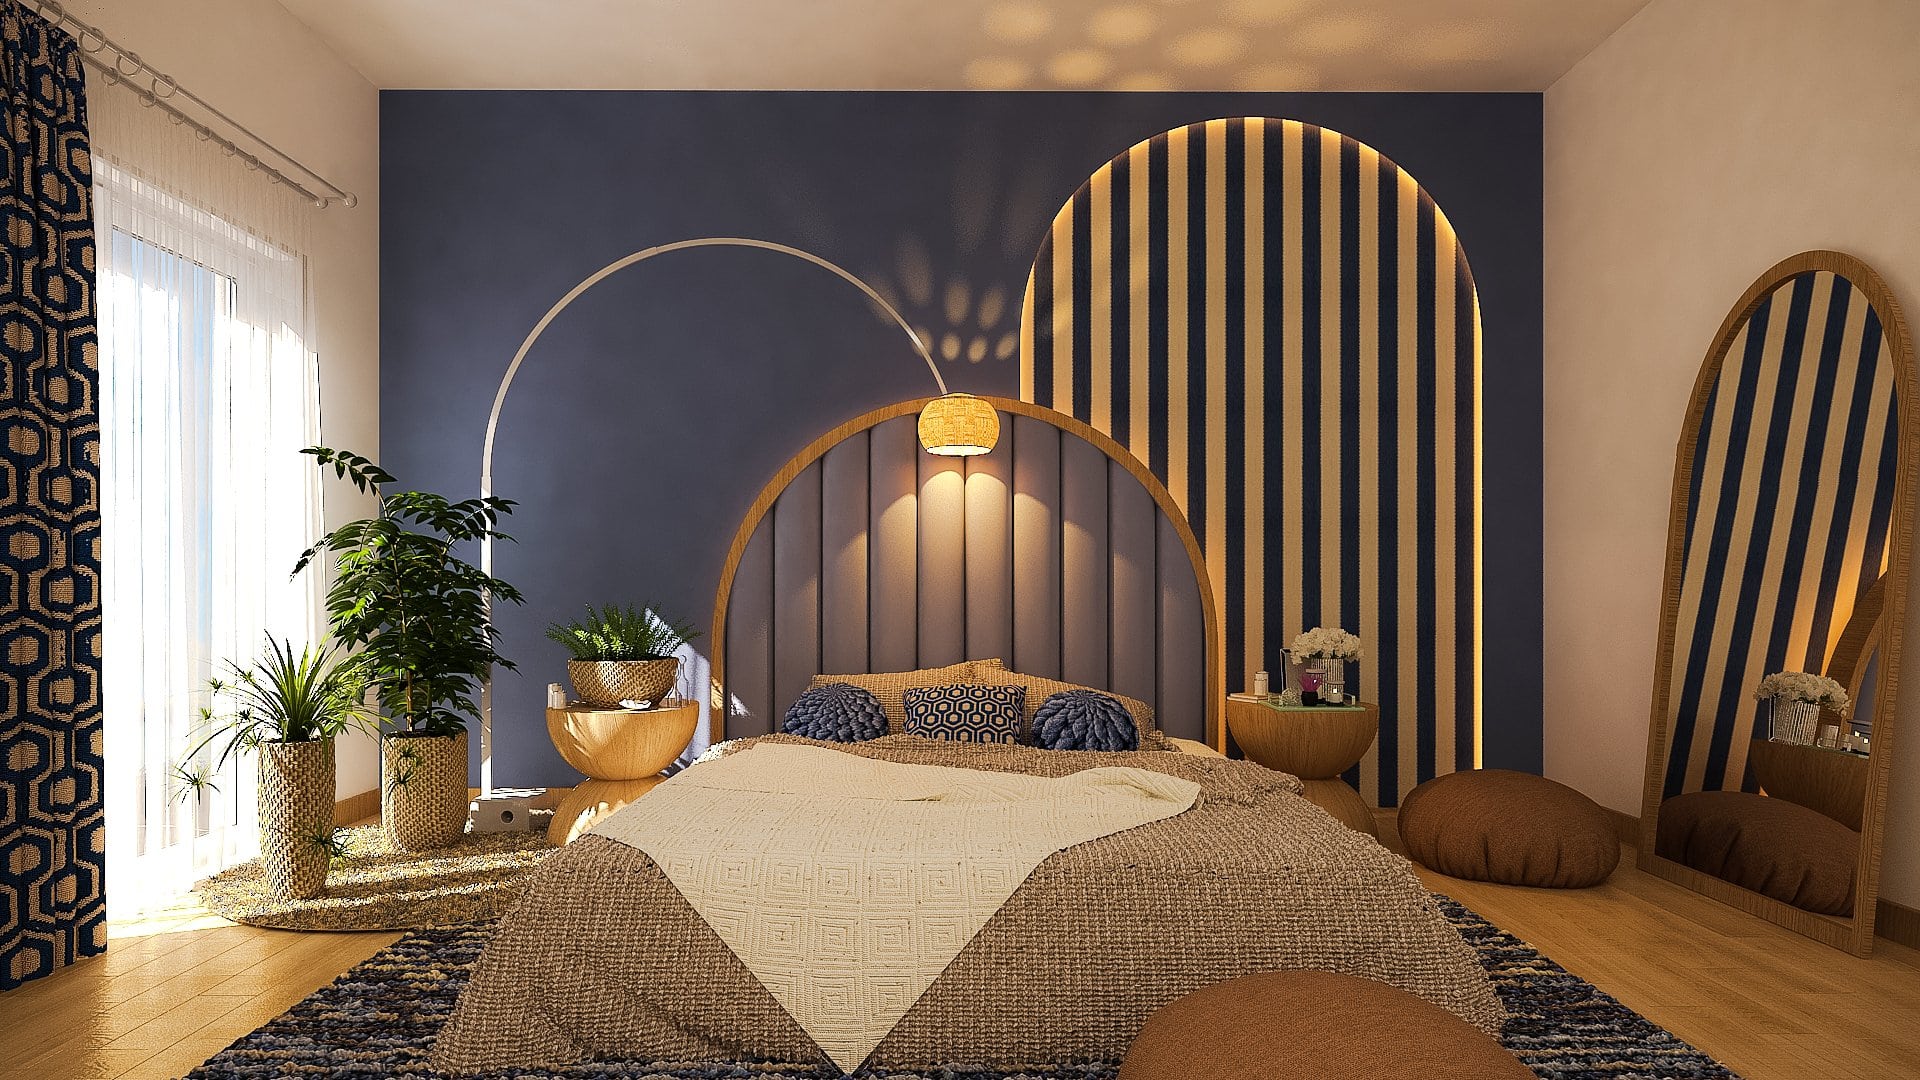 Art Deco meets Scandinavian bedroom interior design